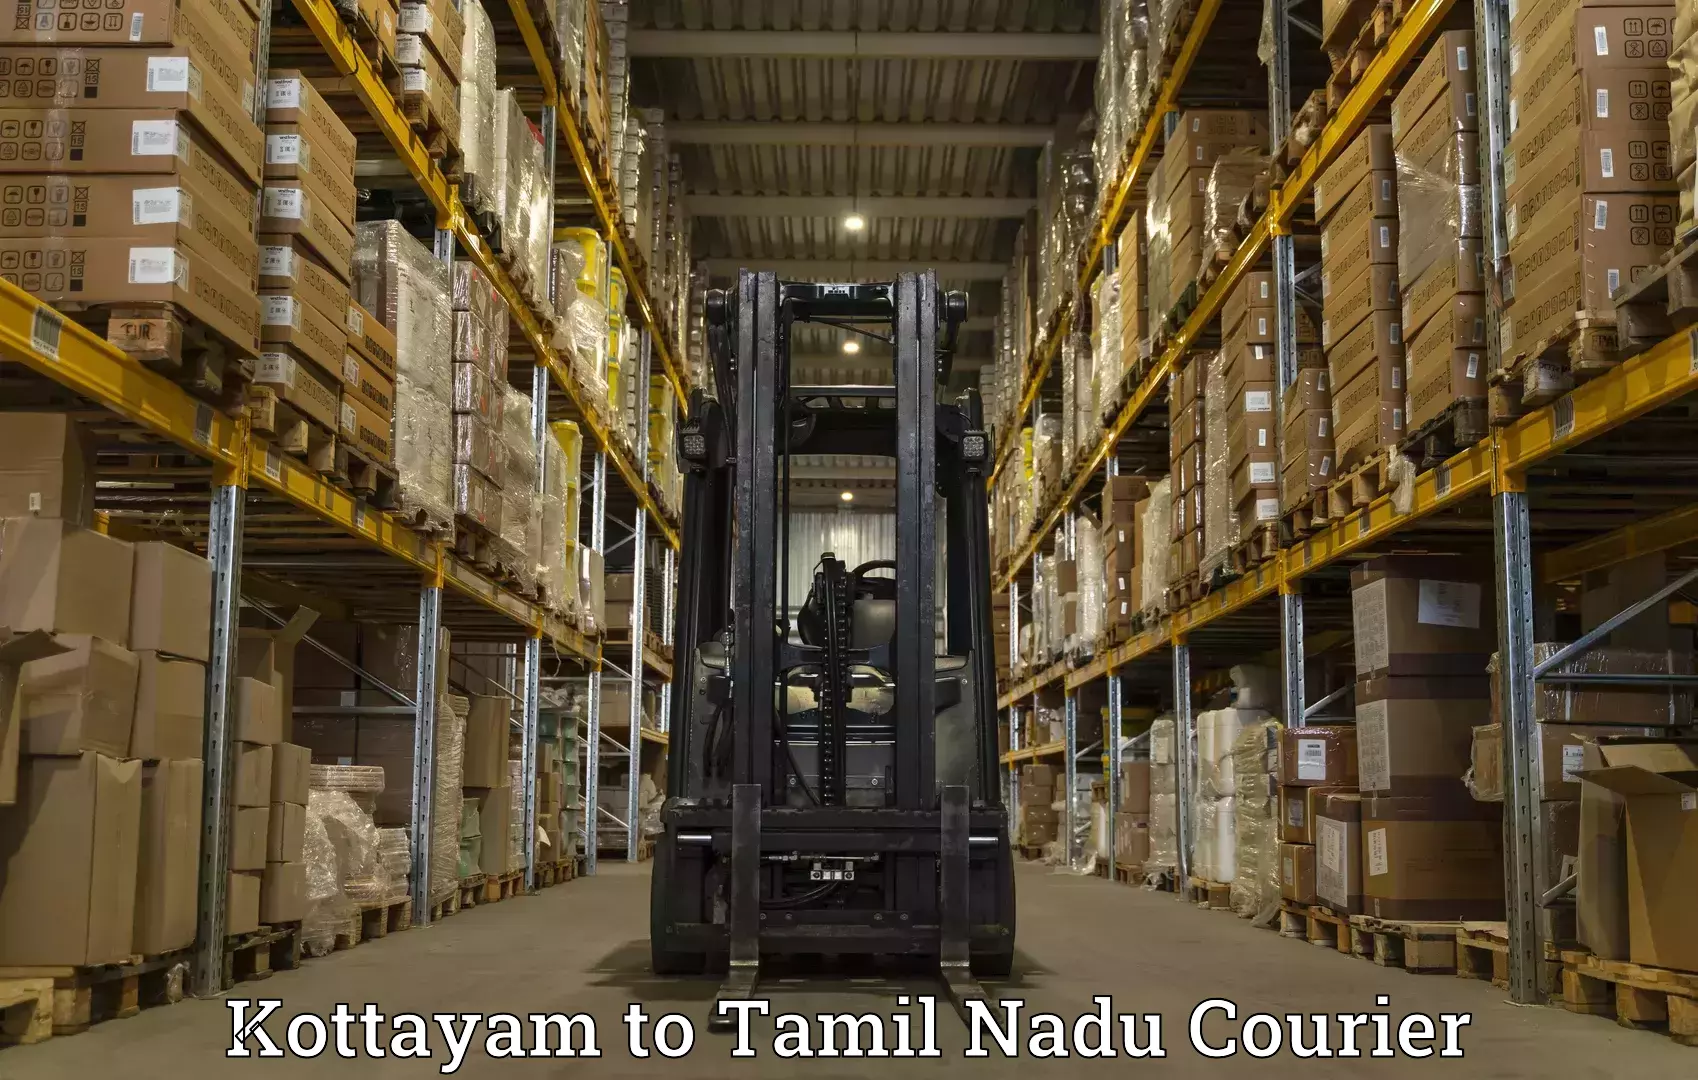 Global logistics network Kottayam to Tamil Nadu